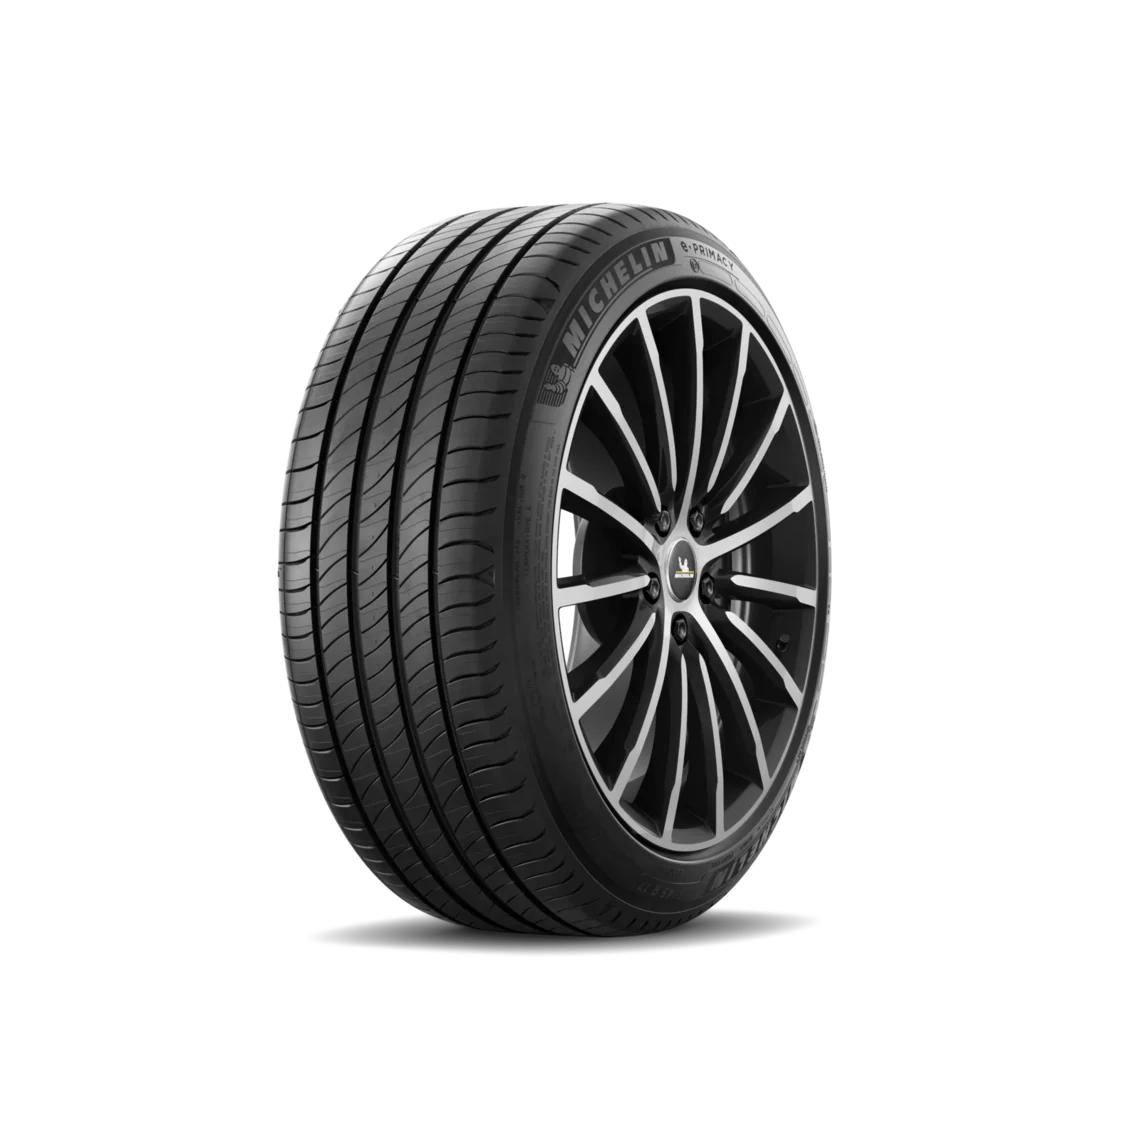 Michelin Michelin 255/50 R19 103T E PRIMACY pneumatici nuovi Estivo 